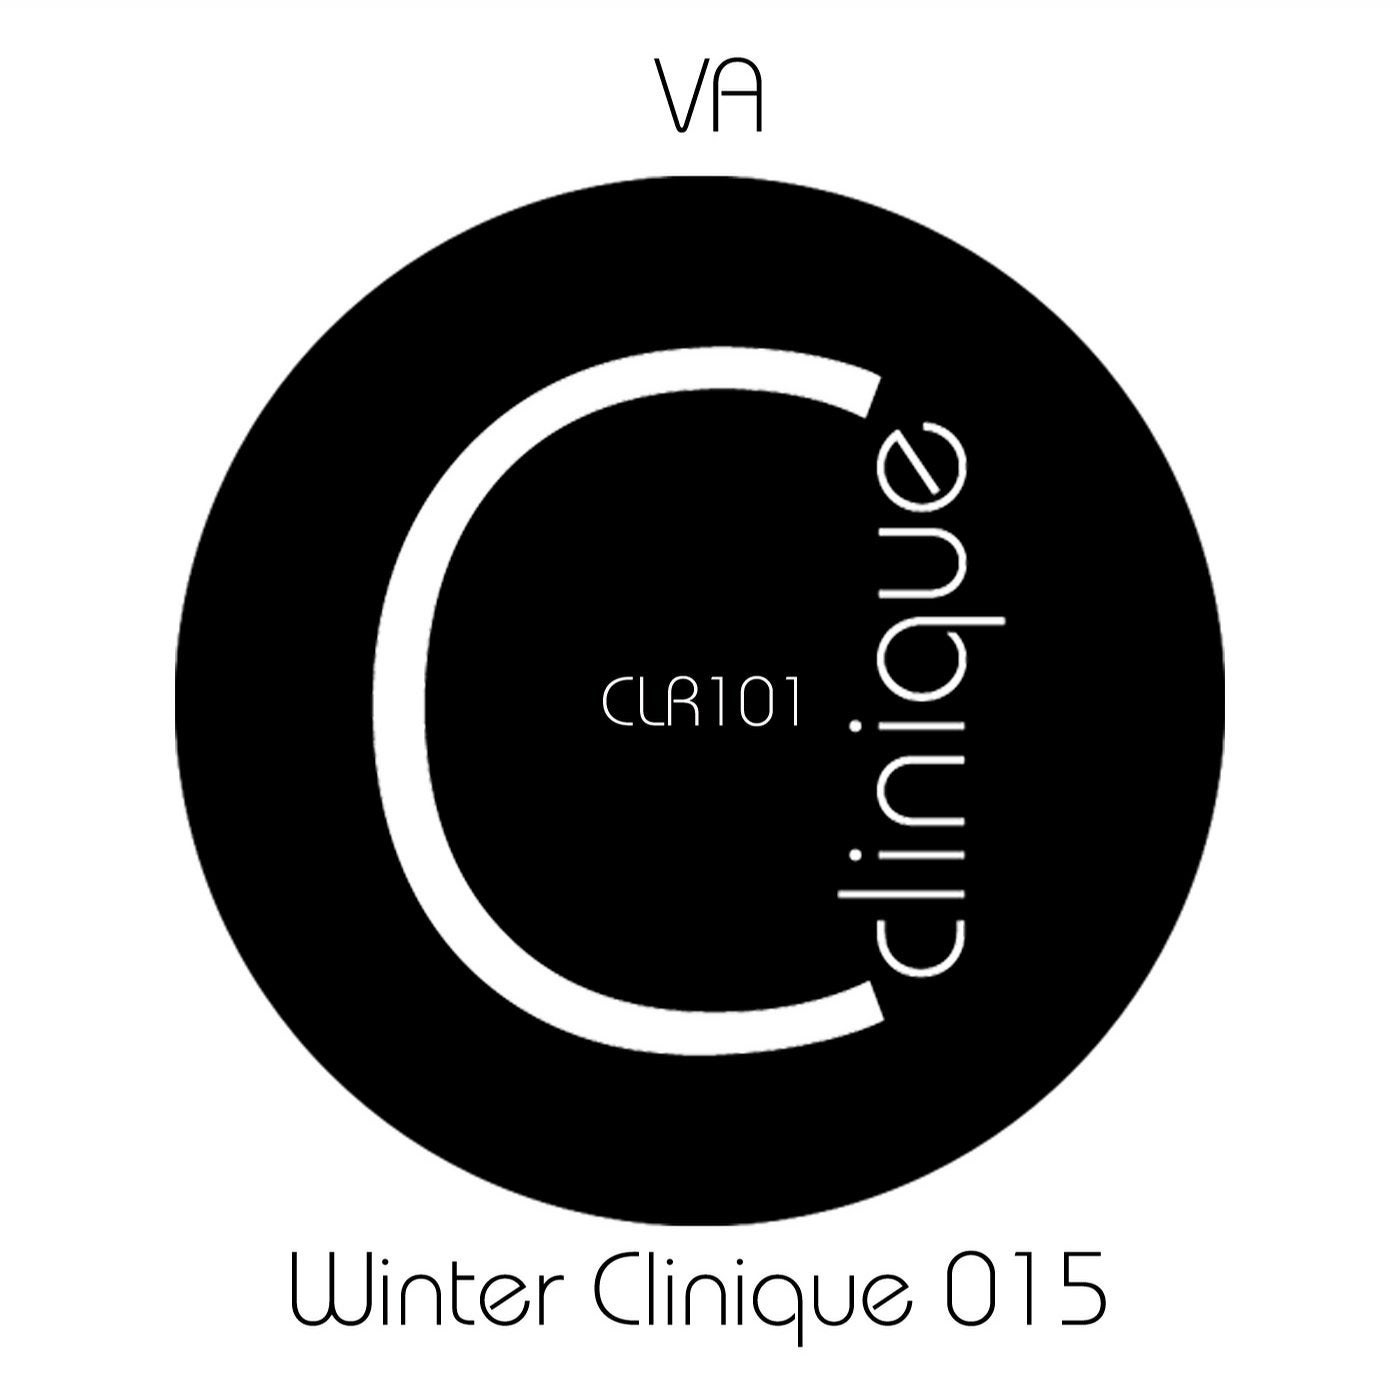 Winter Clinique 015